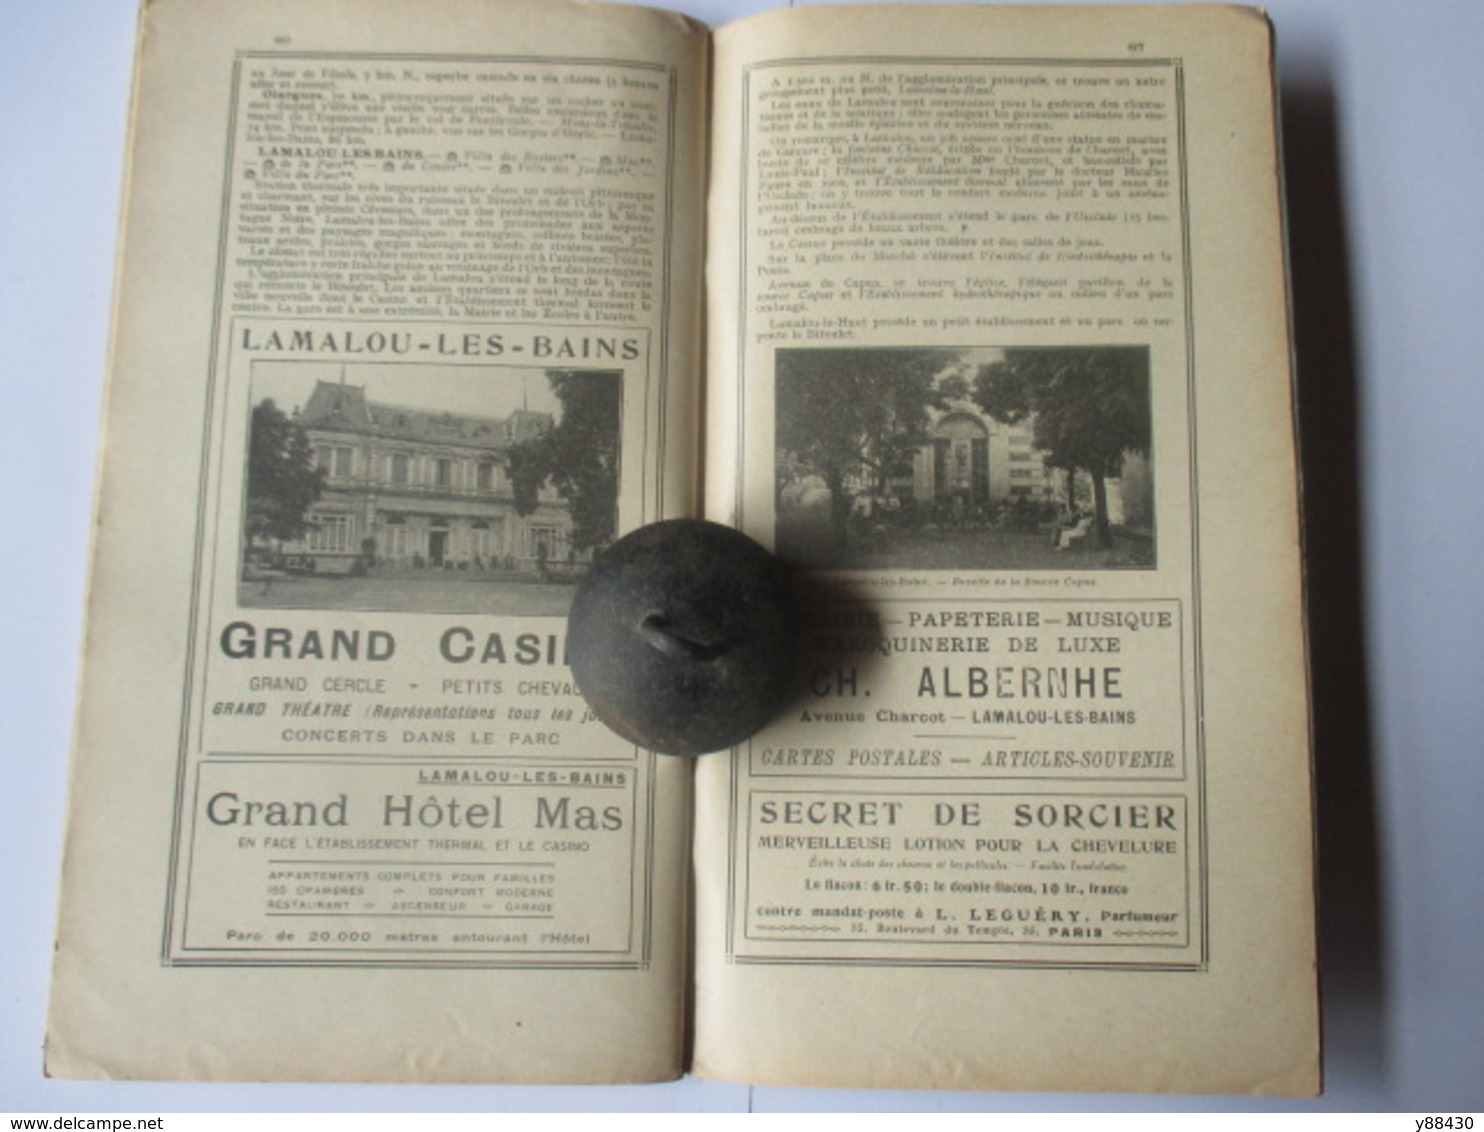 Livret Guides du Touriste THIOLIER de 1922 - LES PYRENEES de l'Ariège à la Méditerranée - 100 pages - 19 photos